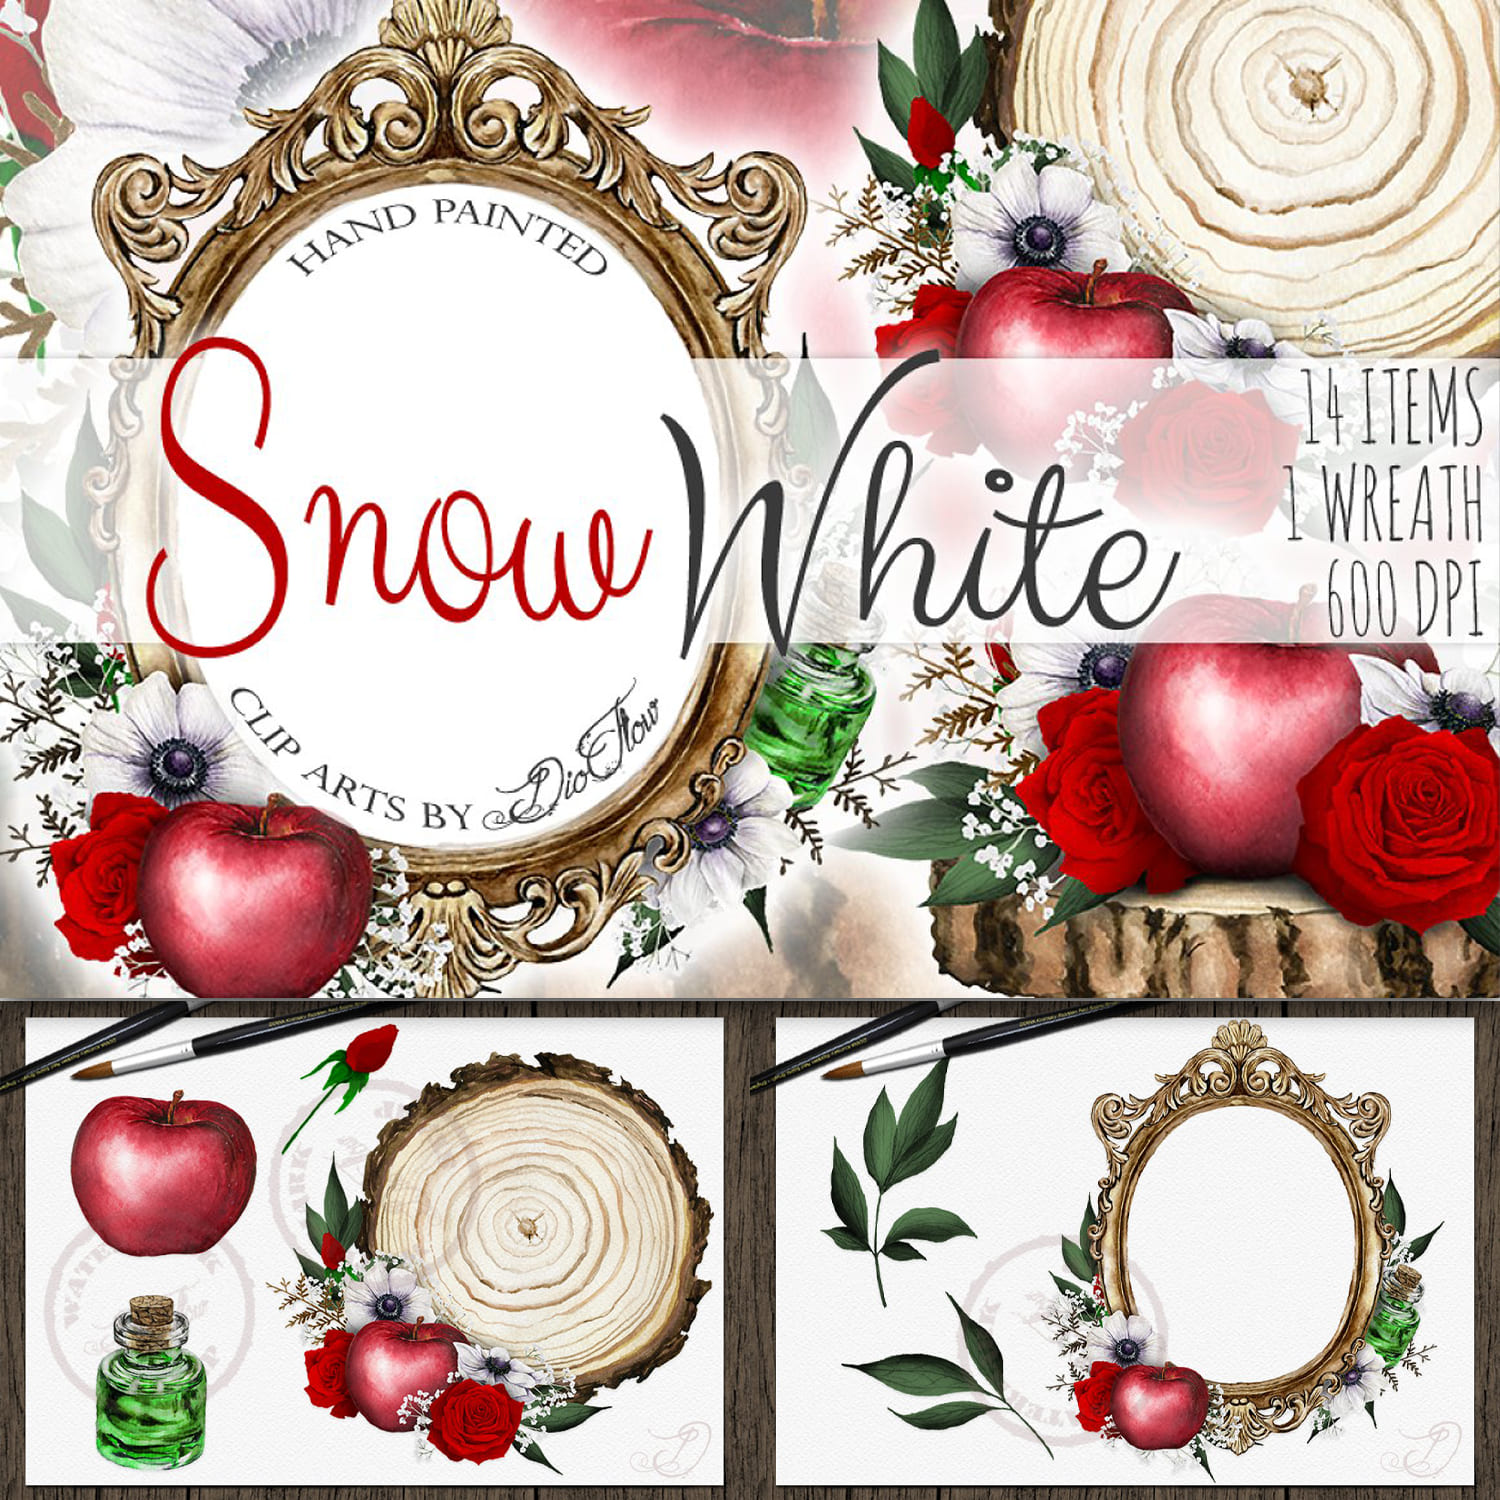 Snow White Watercolor Clip Art cover.